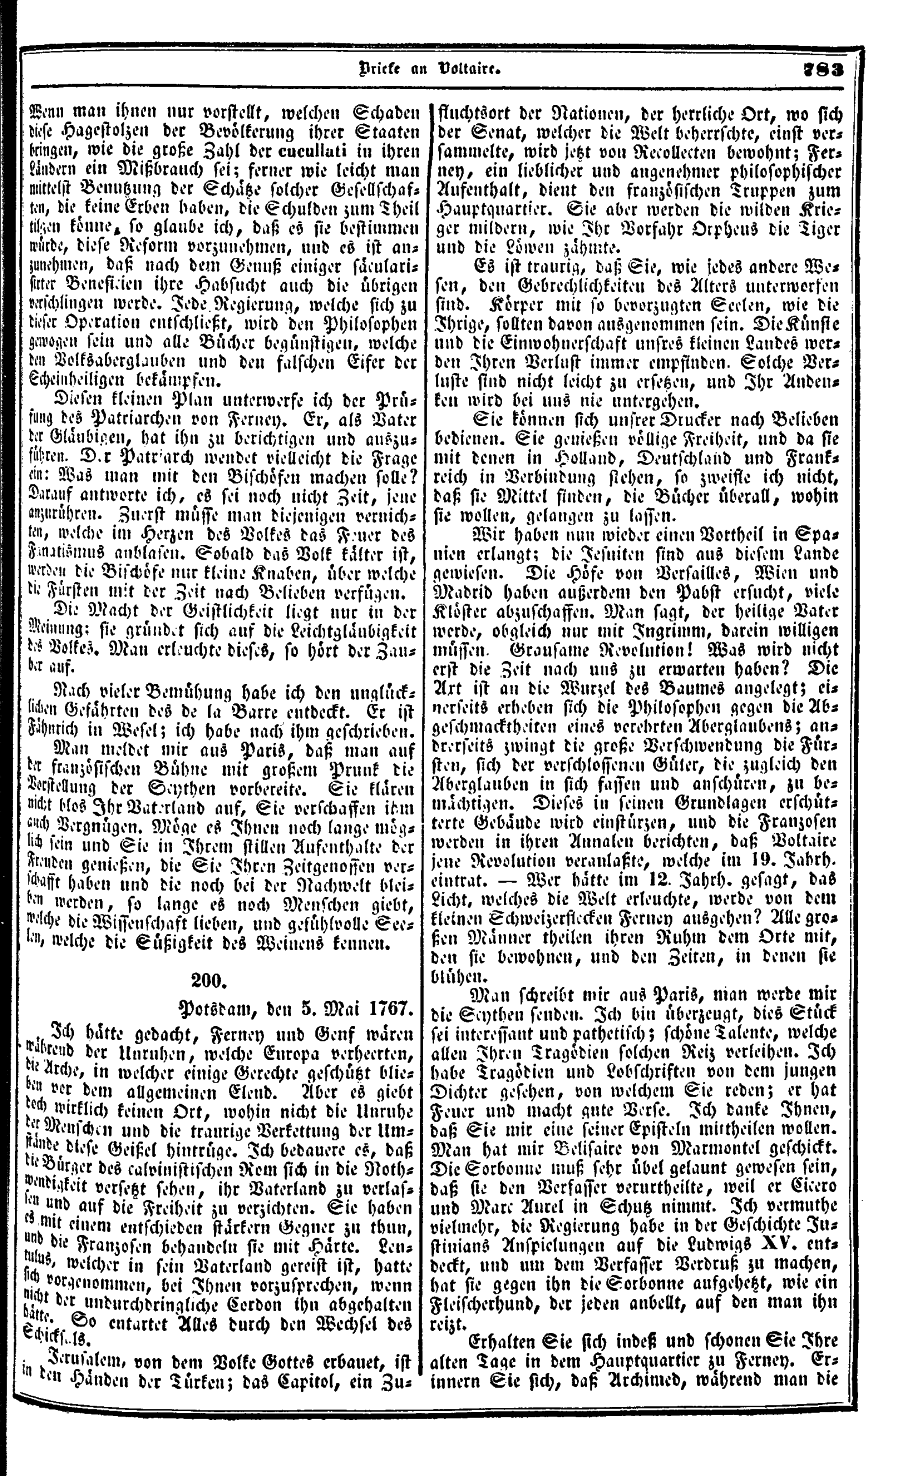 S. 783, Obj. 2